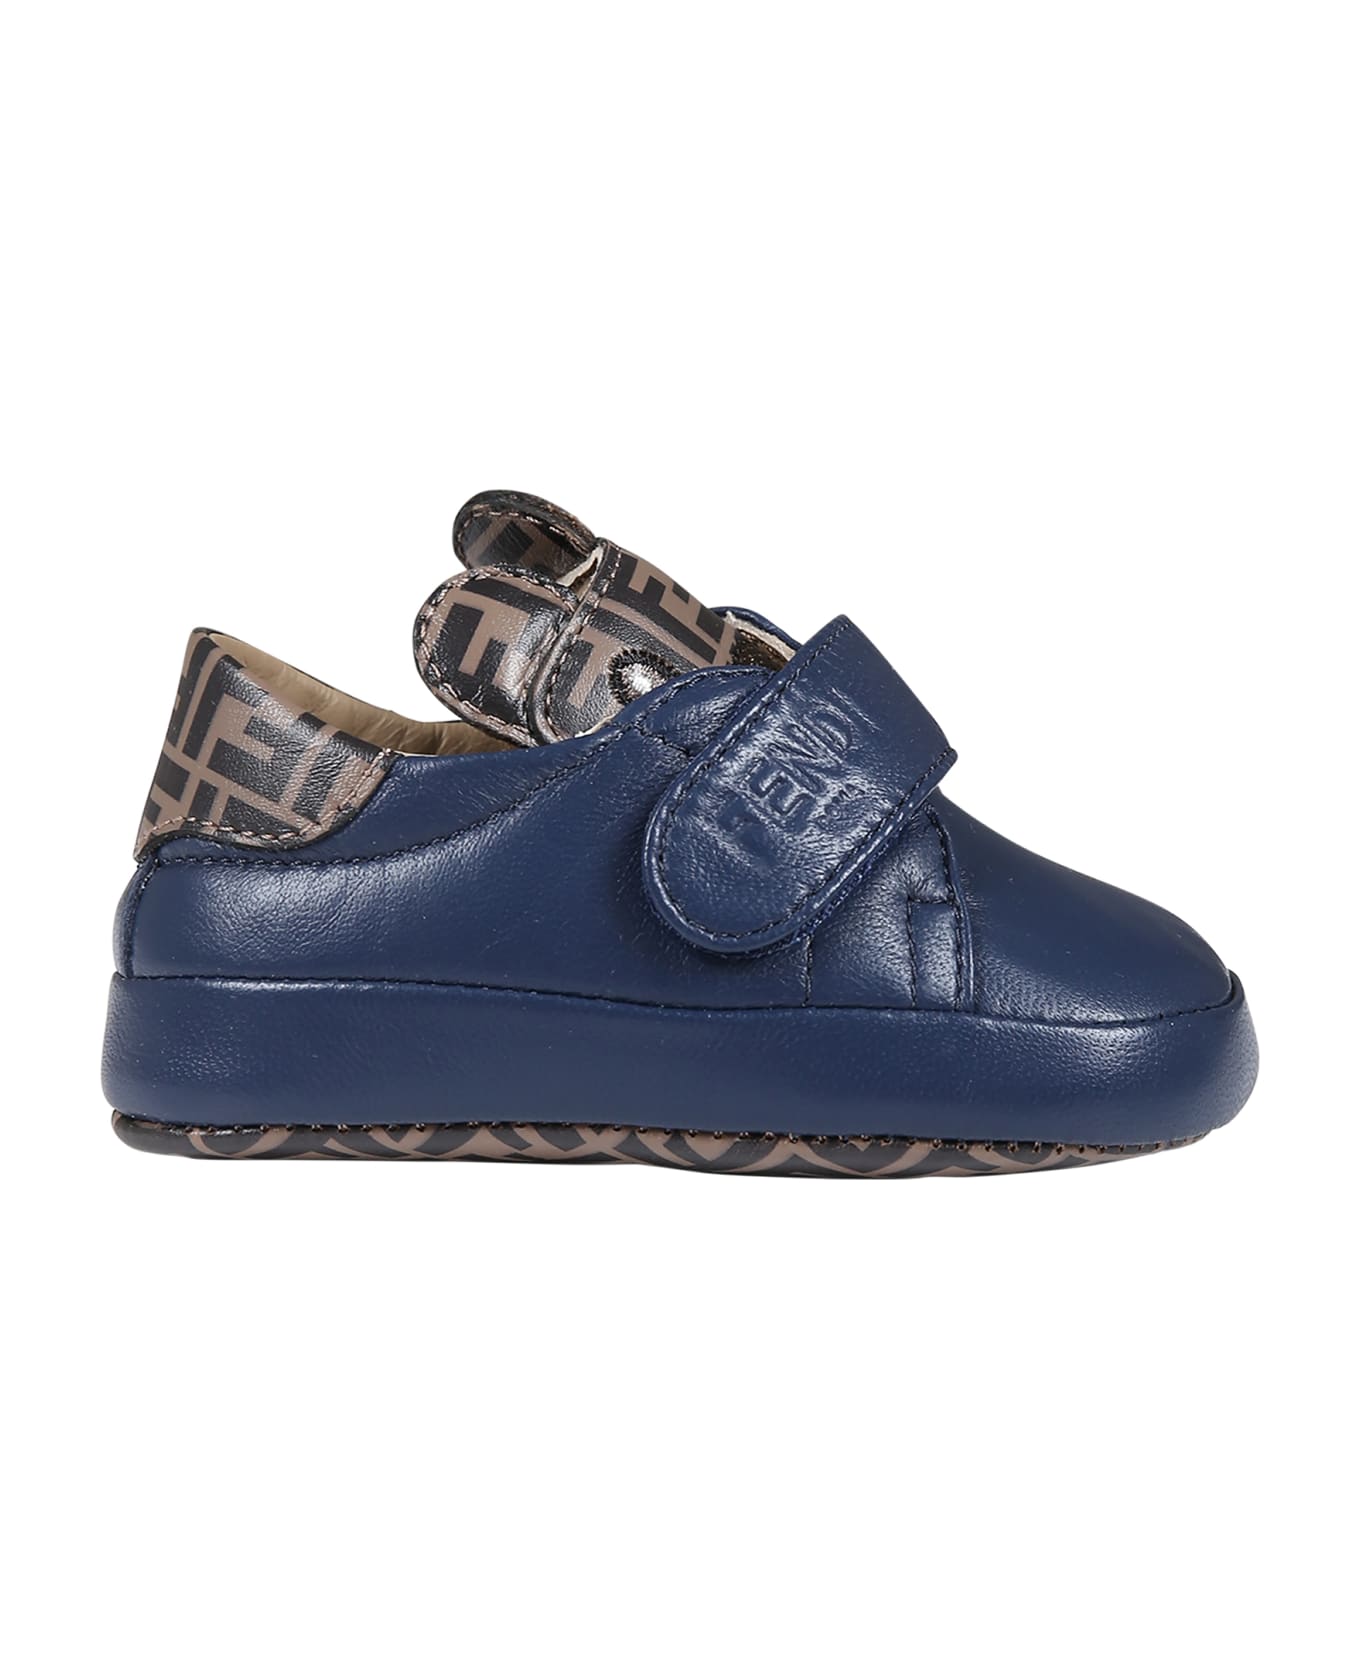 Fendi Blue Sneakers For Baby Boy - Blue シューズ